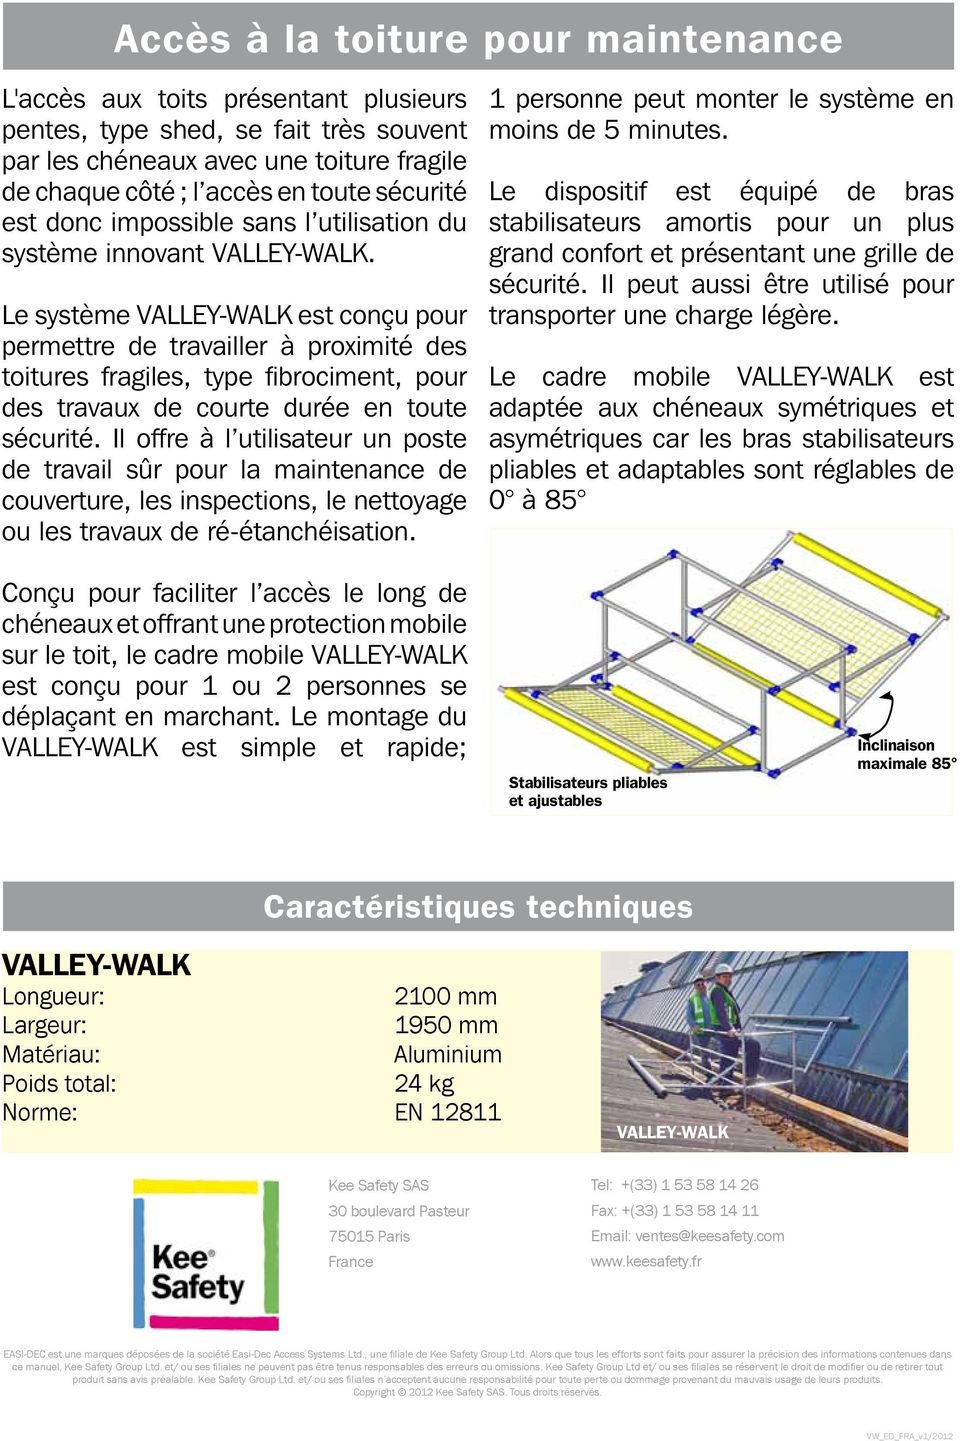 Le système VALLEY-WALK est conçu pour permettre de travailler à proximité des toitures fragiles, type fibrociment, pour des travaux de courte durée en toute sécurité.